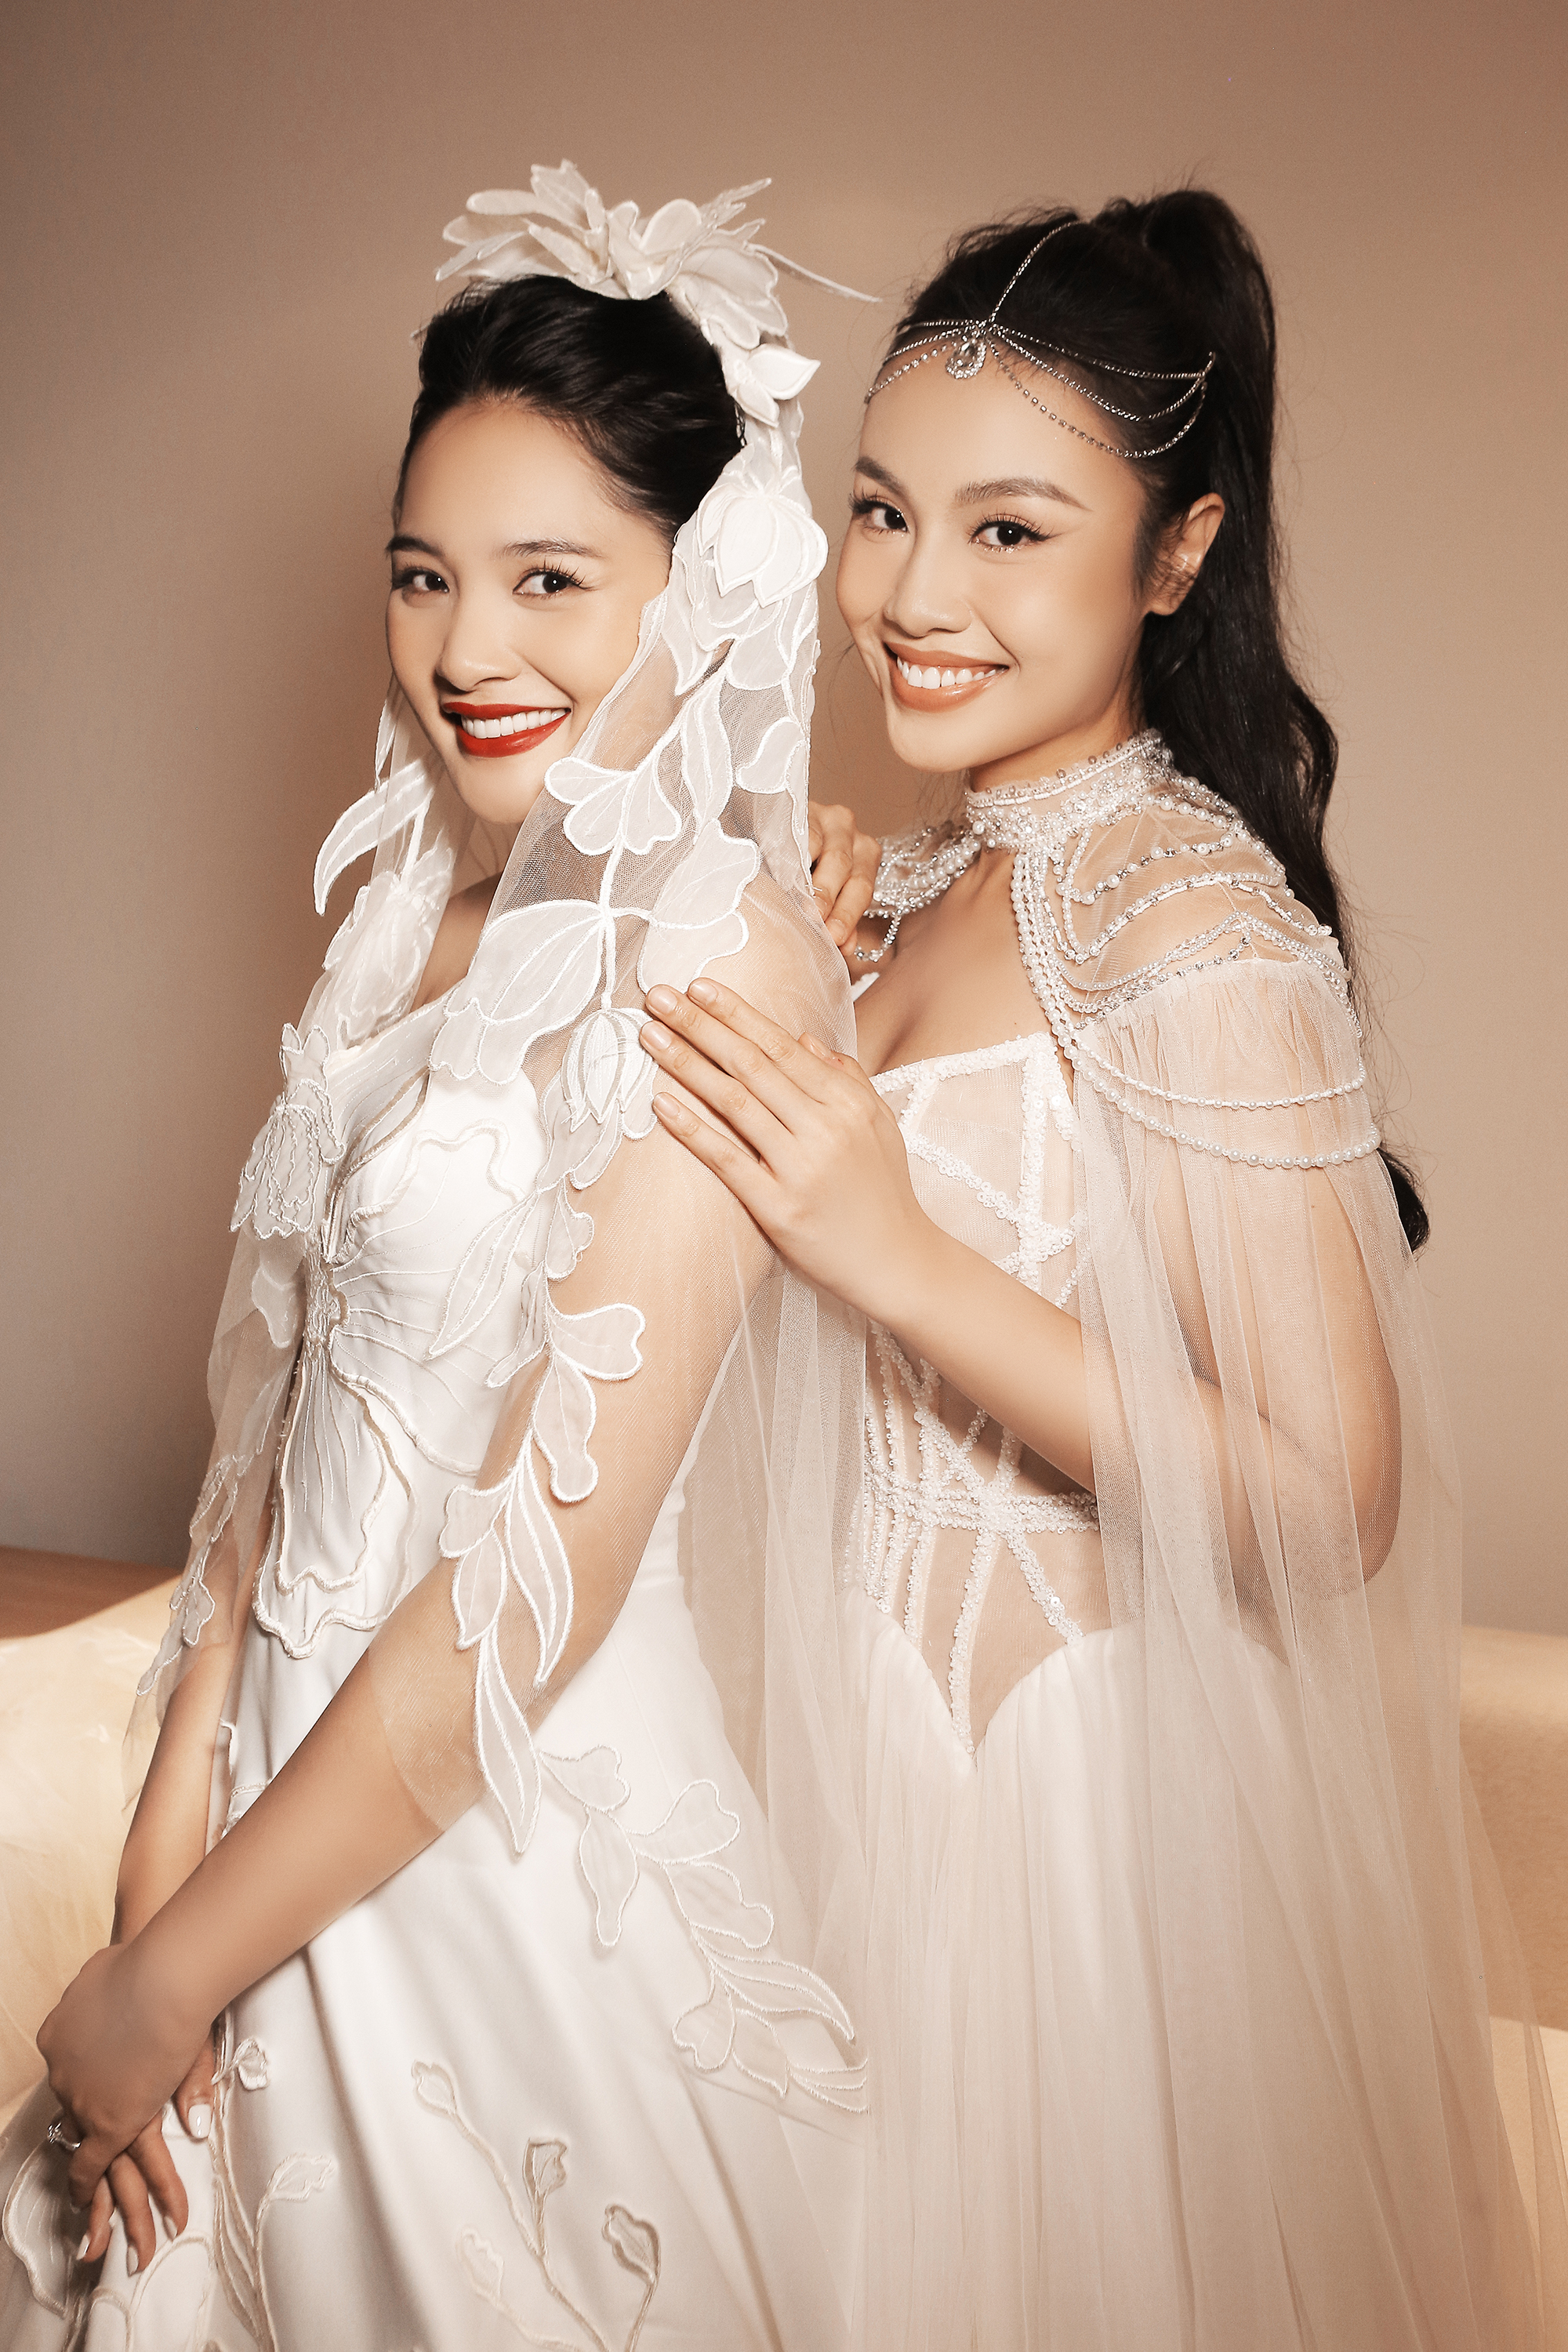 Á hậu Thủy Tiên trình diễn áo cưới cùng Hoa hậu đẹp nhất châu Á 2009 - Ảnh 2.